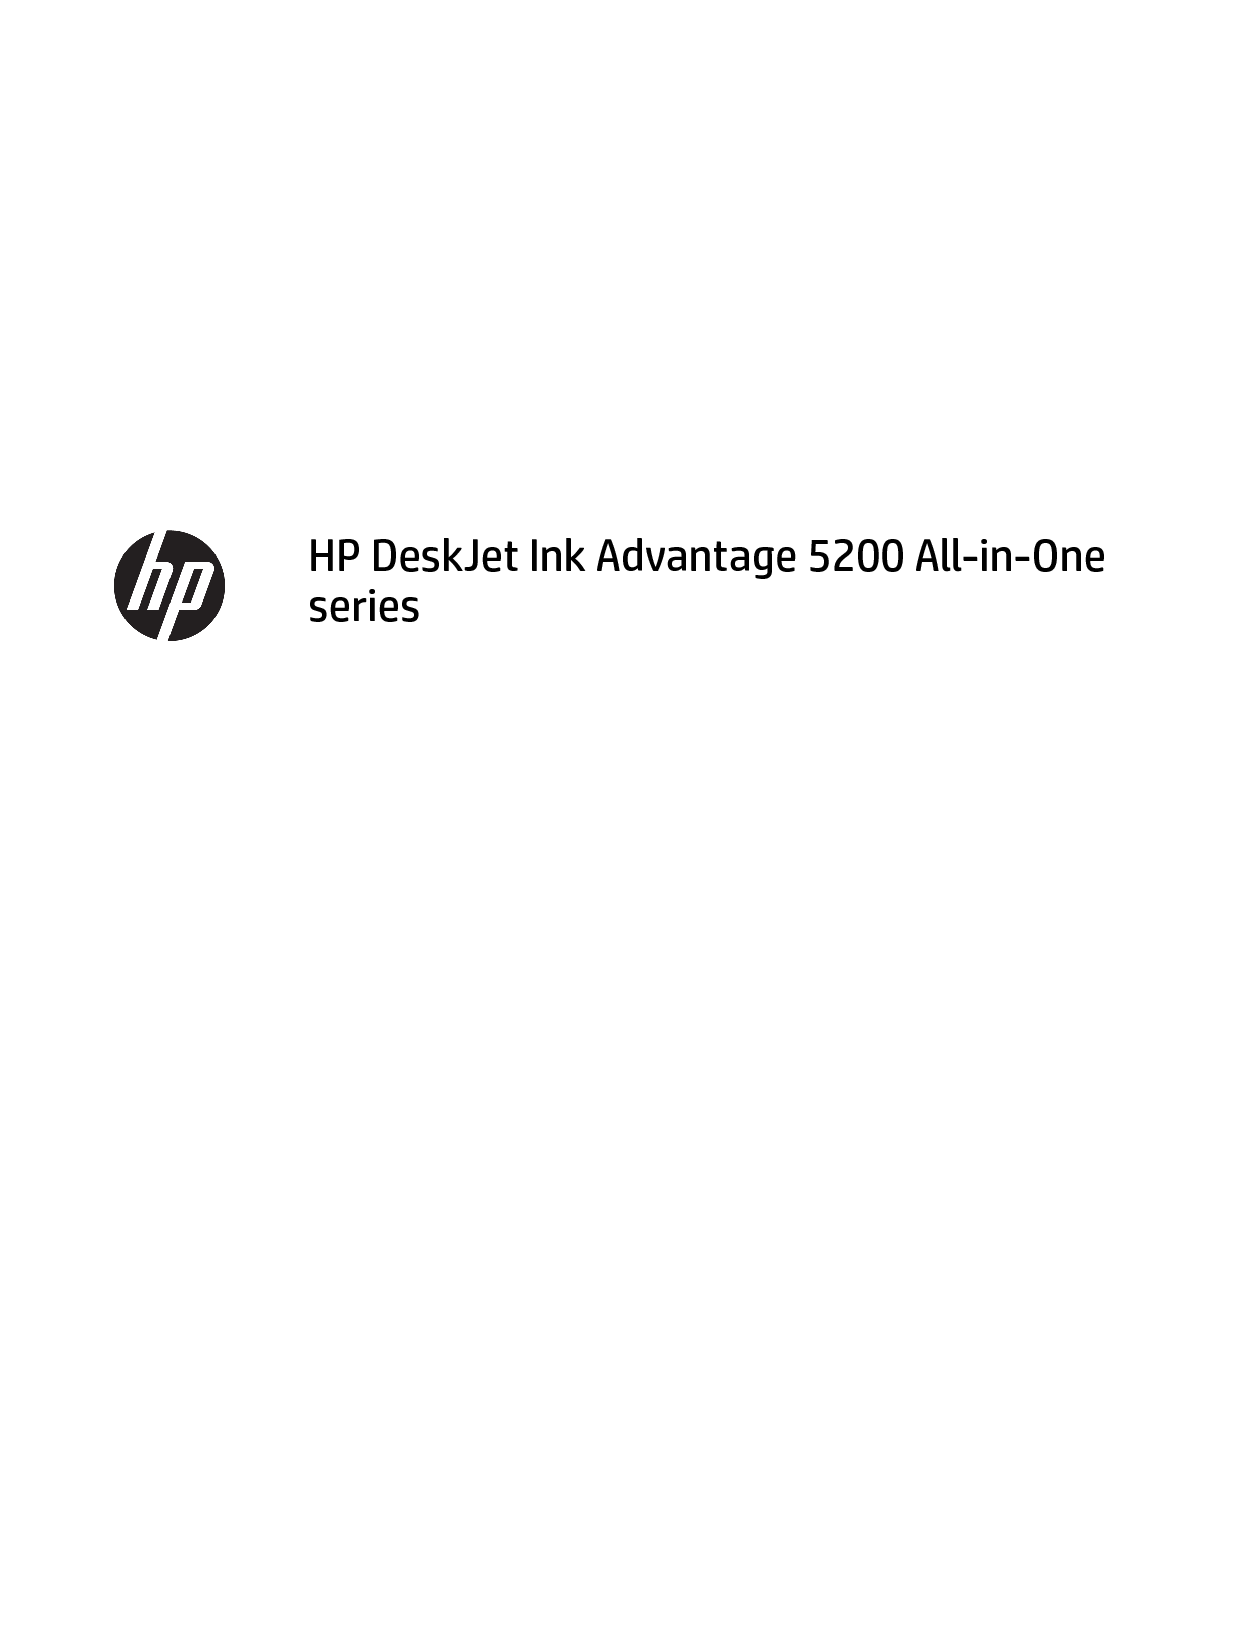 惠普 HP DeskJet Ink Advantage 5200 用户指南 封面